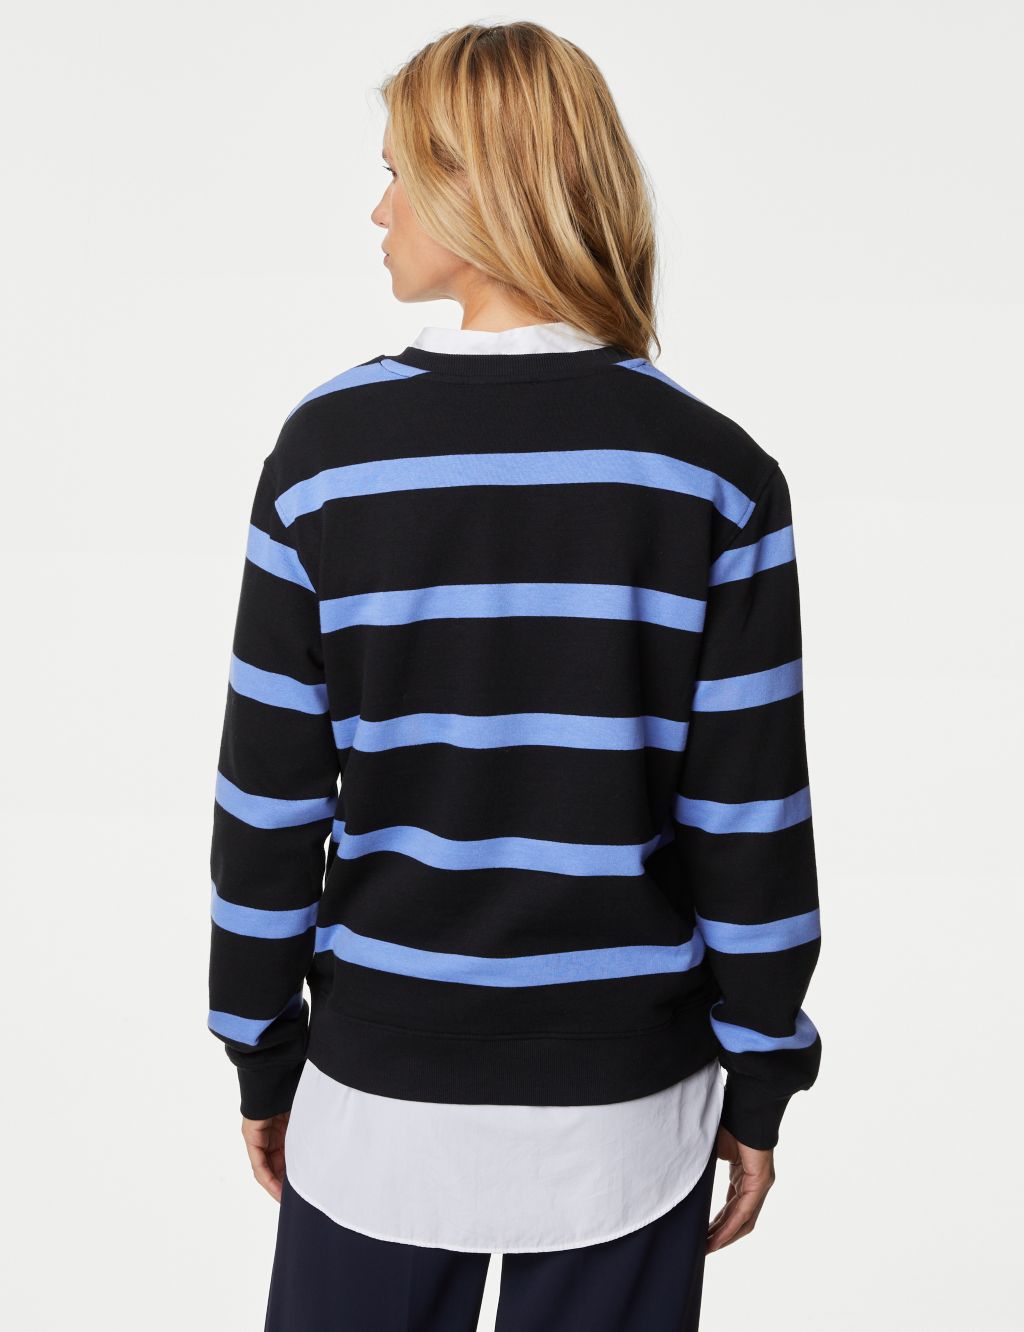 Cotton Rich Striped Crew Neck Sweatshirt image 5